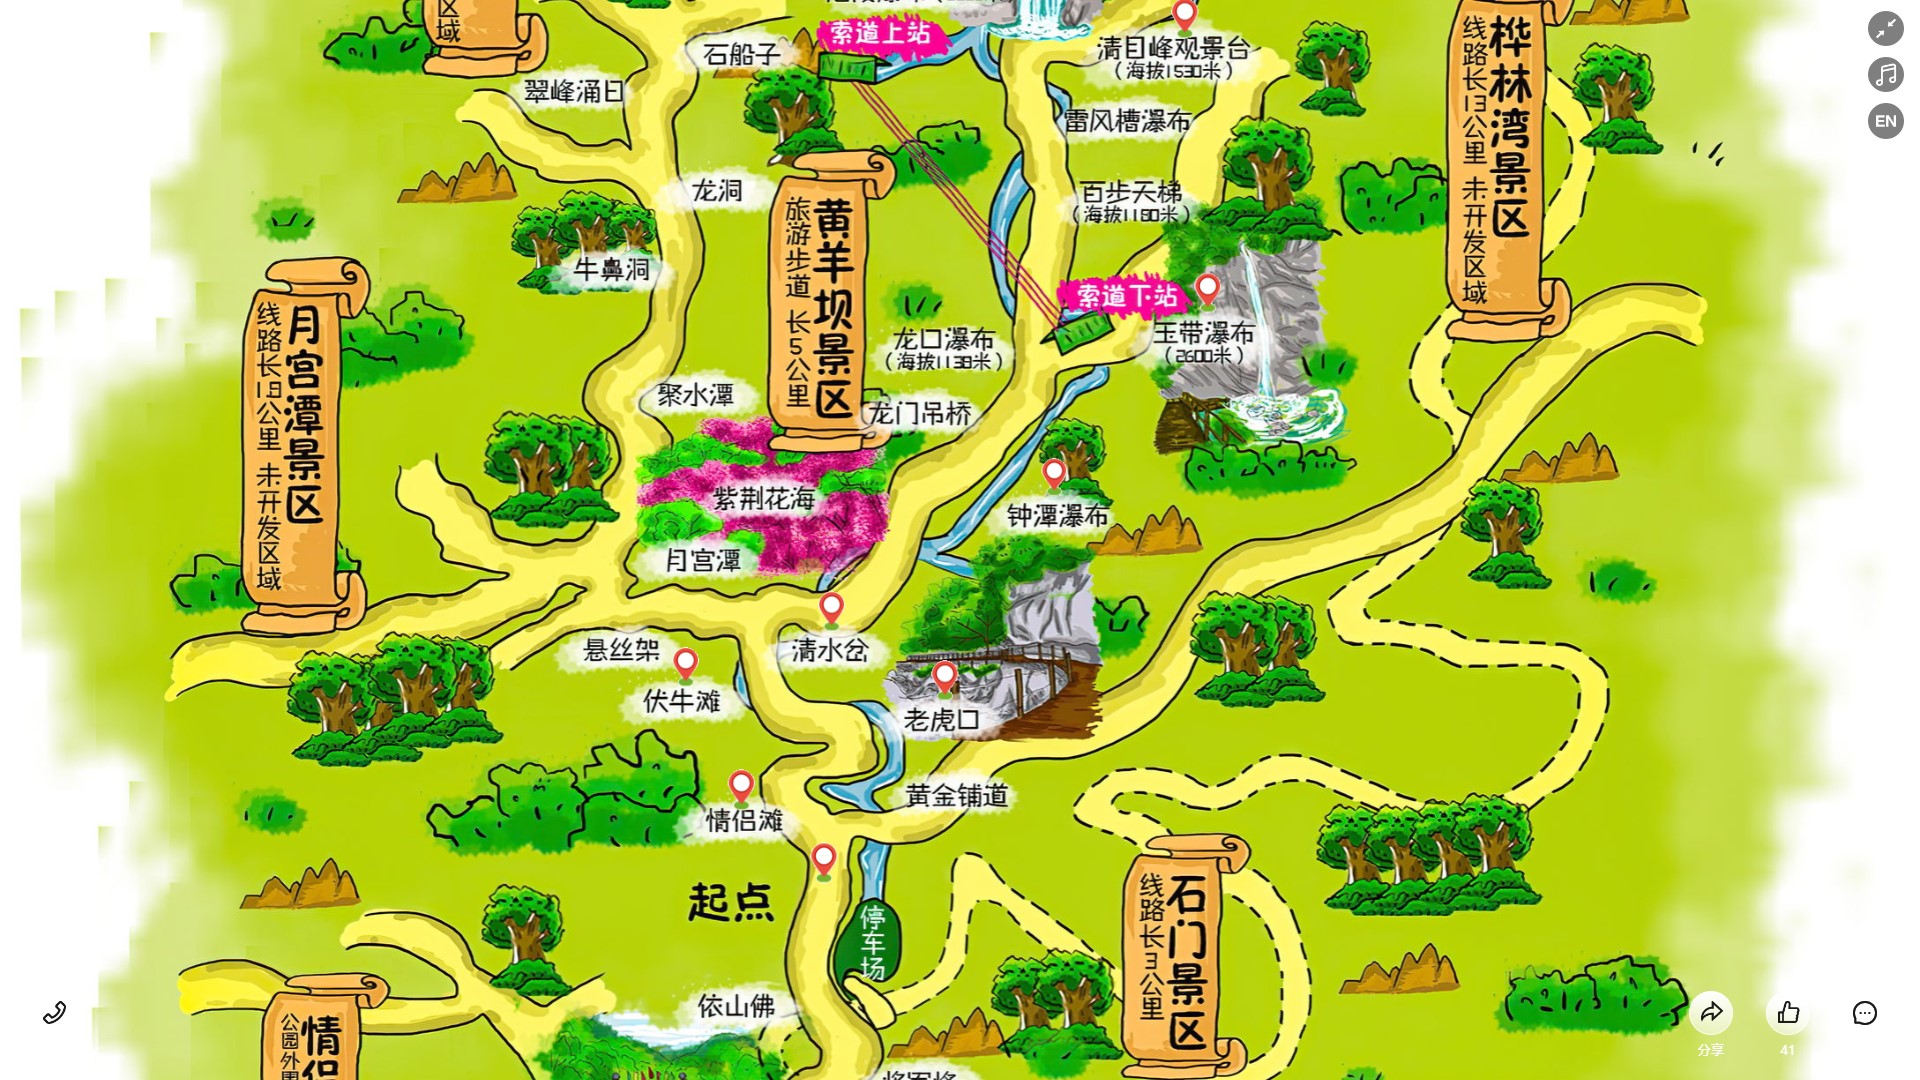 福山镇景区导览系统